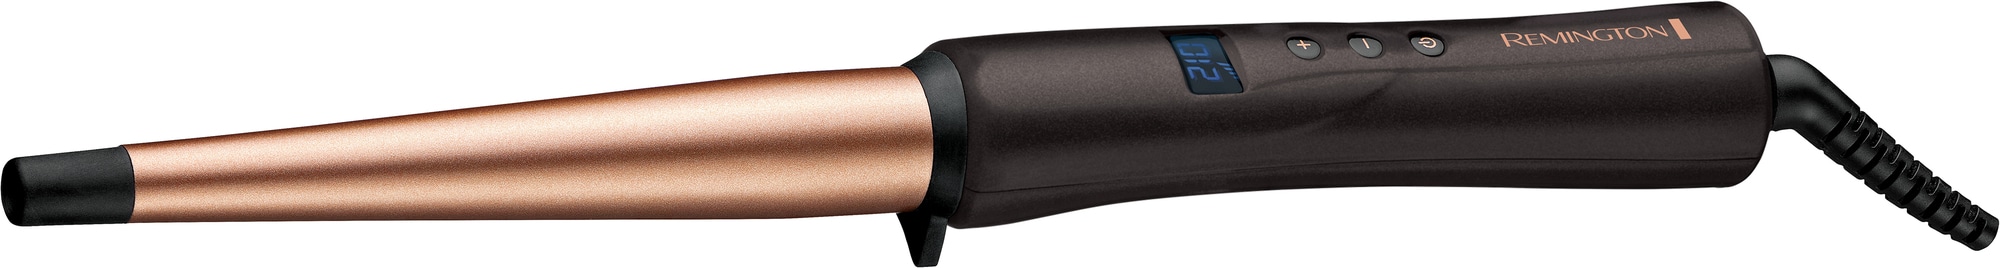 Remington Copper Radiance krøllejern CI5700